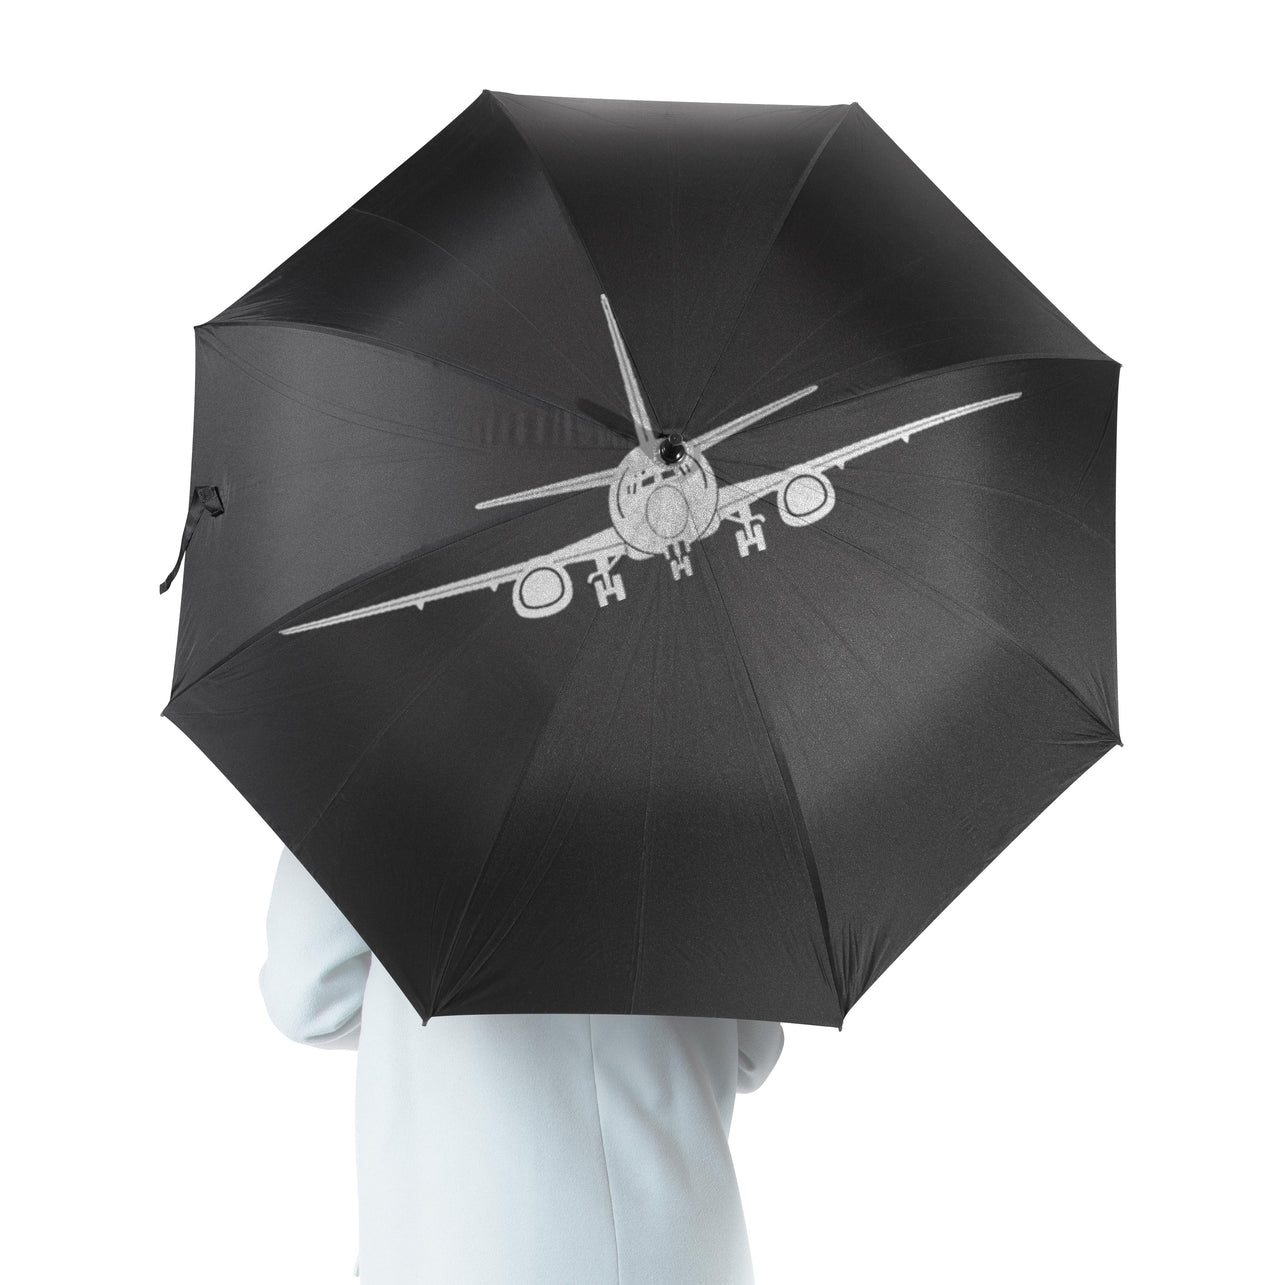 Boeing 737 Silhouette Designed Umbrella